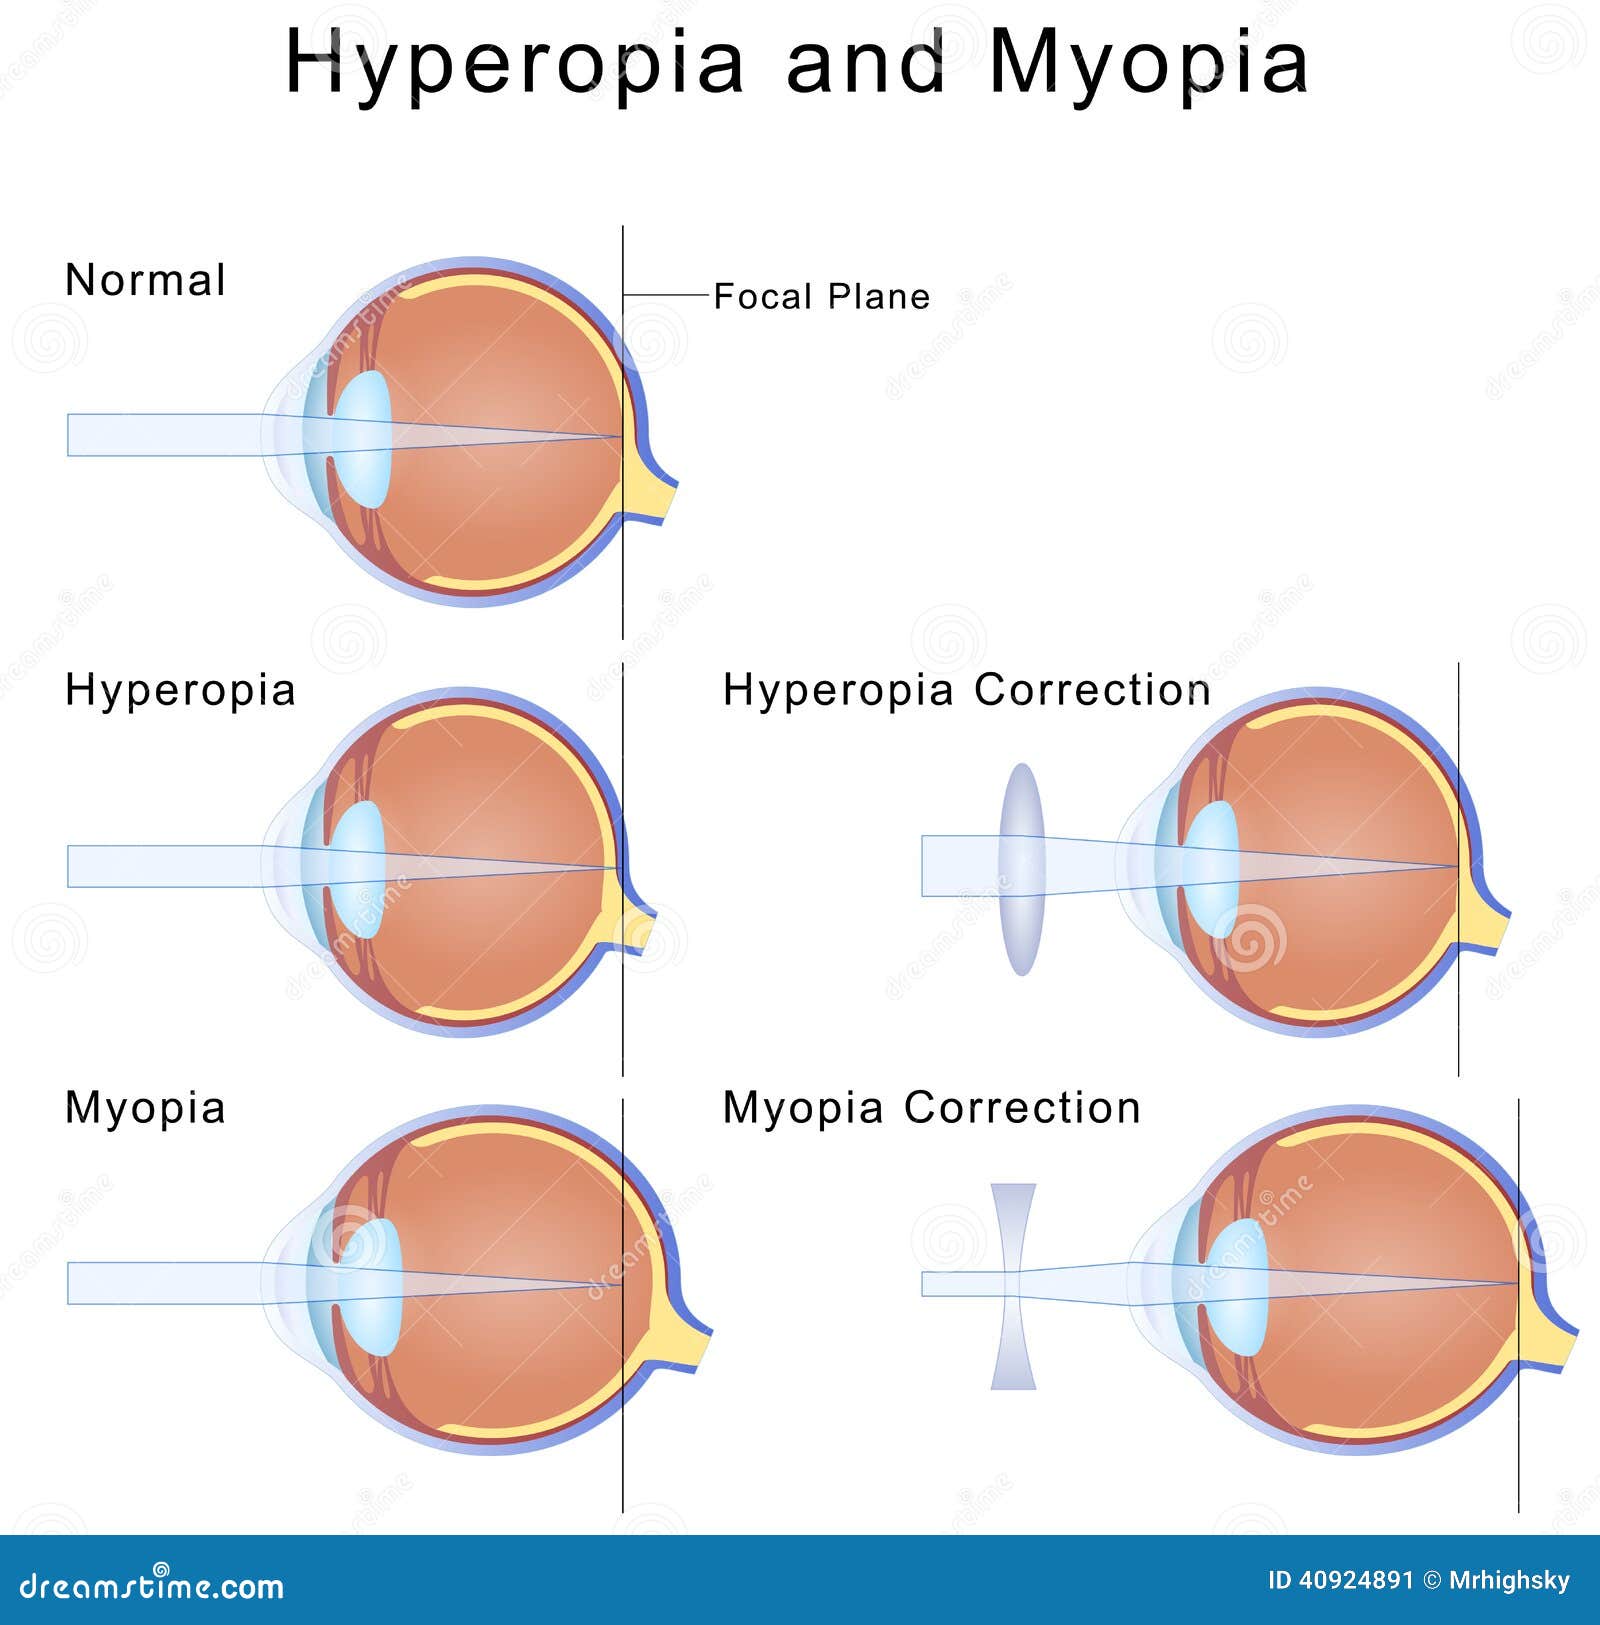 Mi a hyperopia és a myopia - idsign.hu